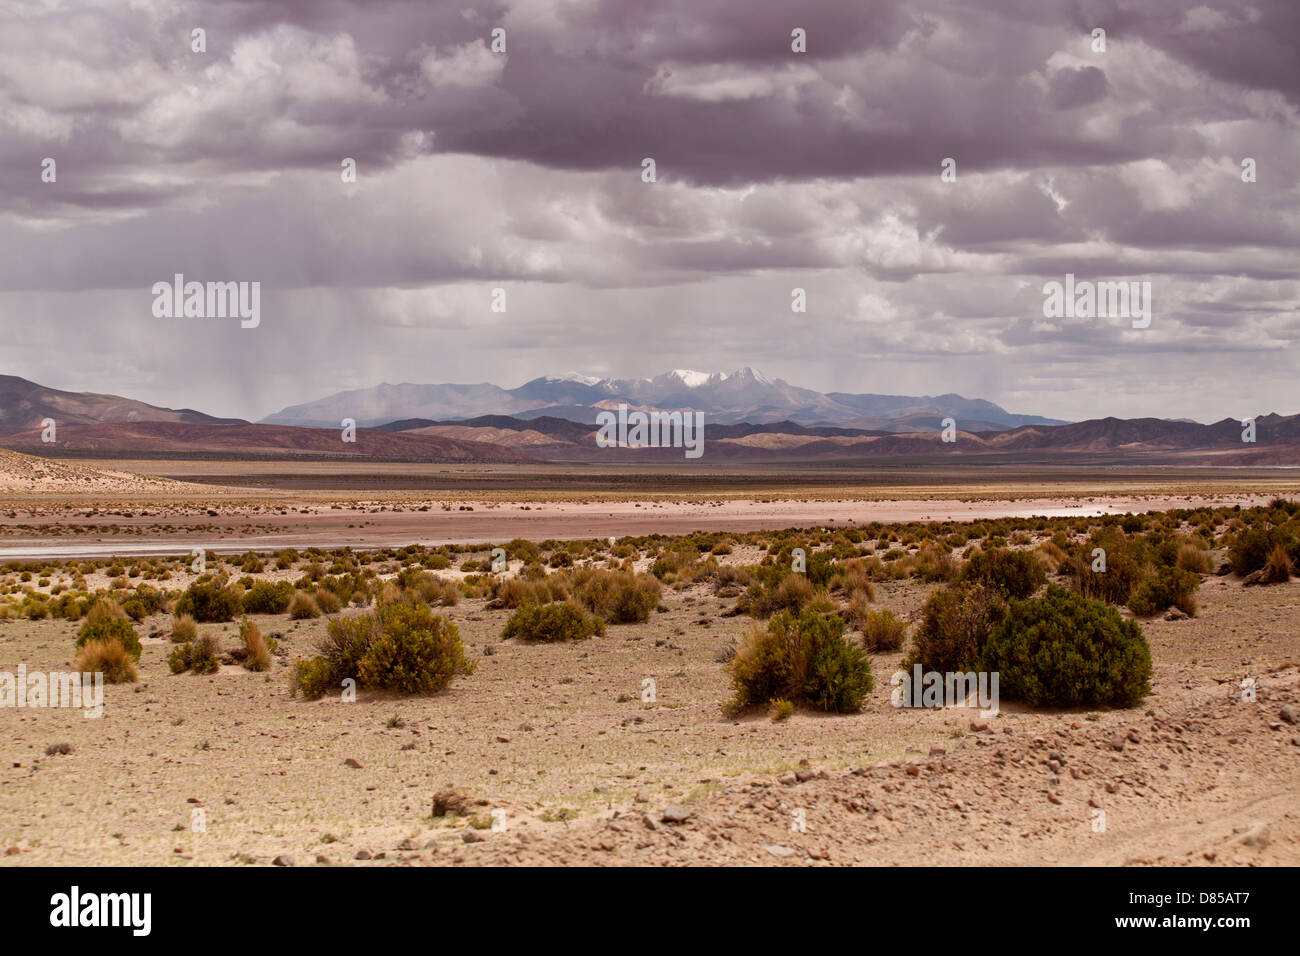 El paisaje del desierto alrededor de la ciudad de Tupiza Foto de stock